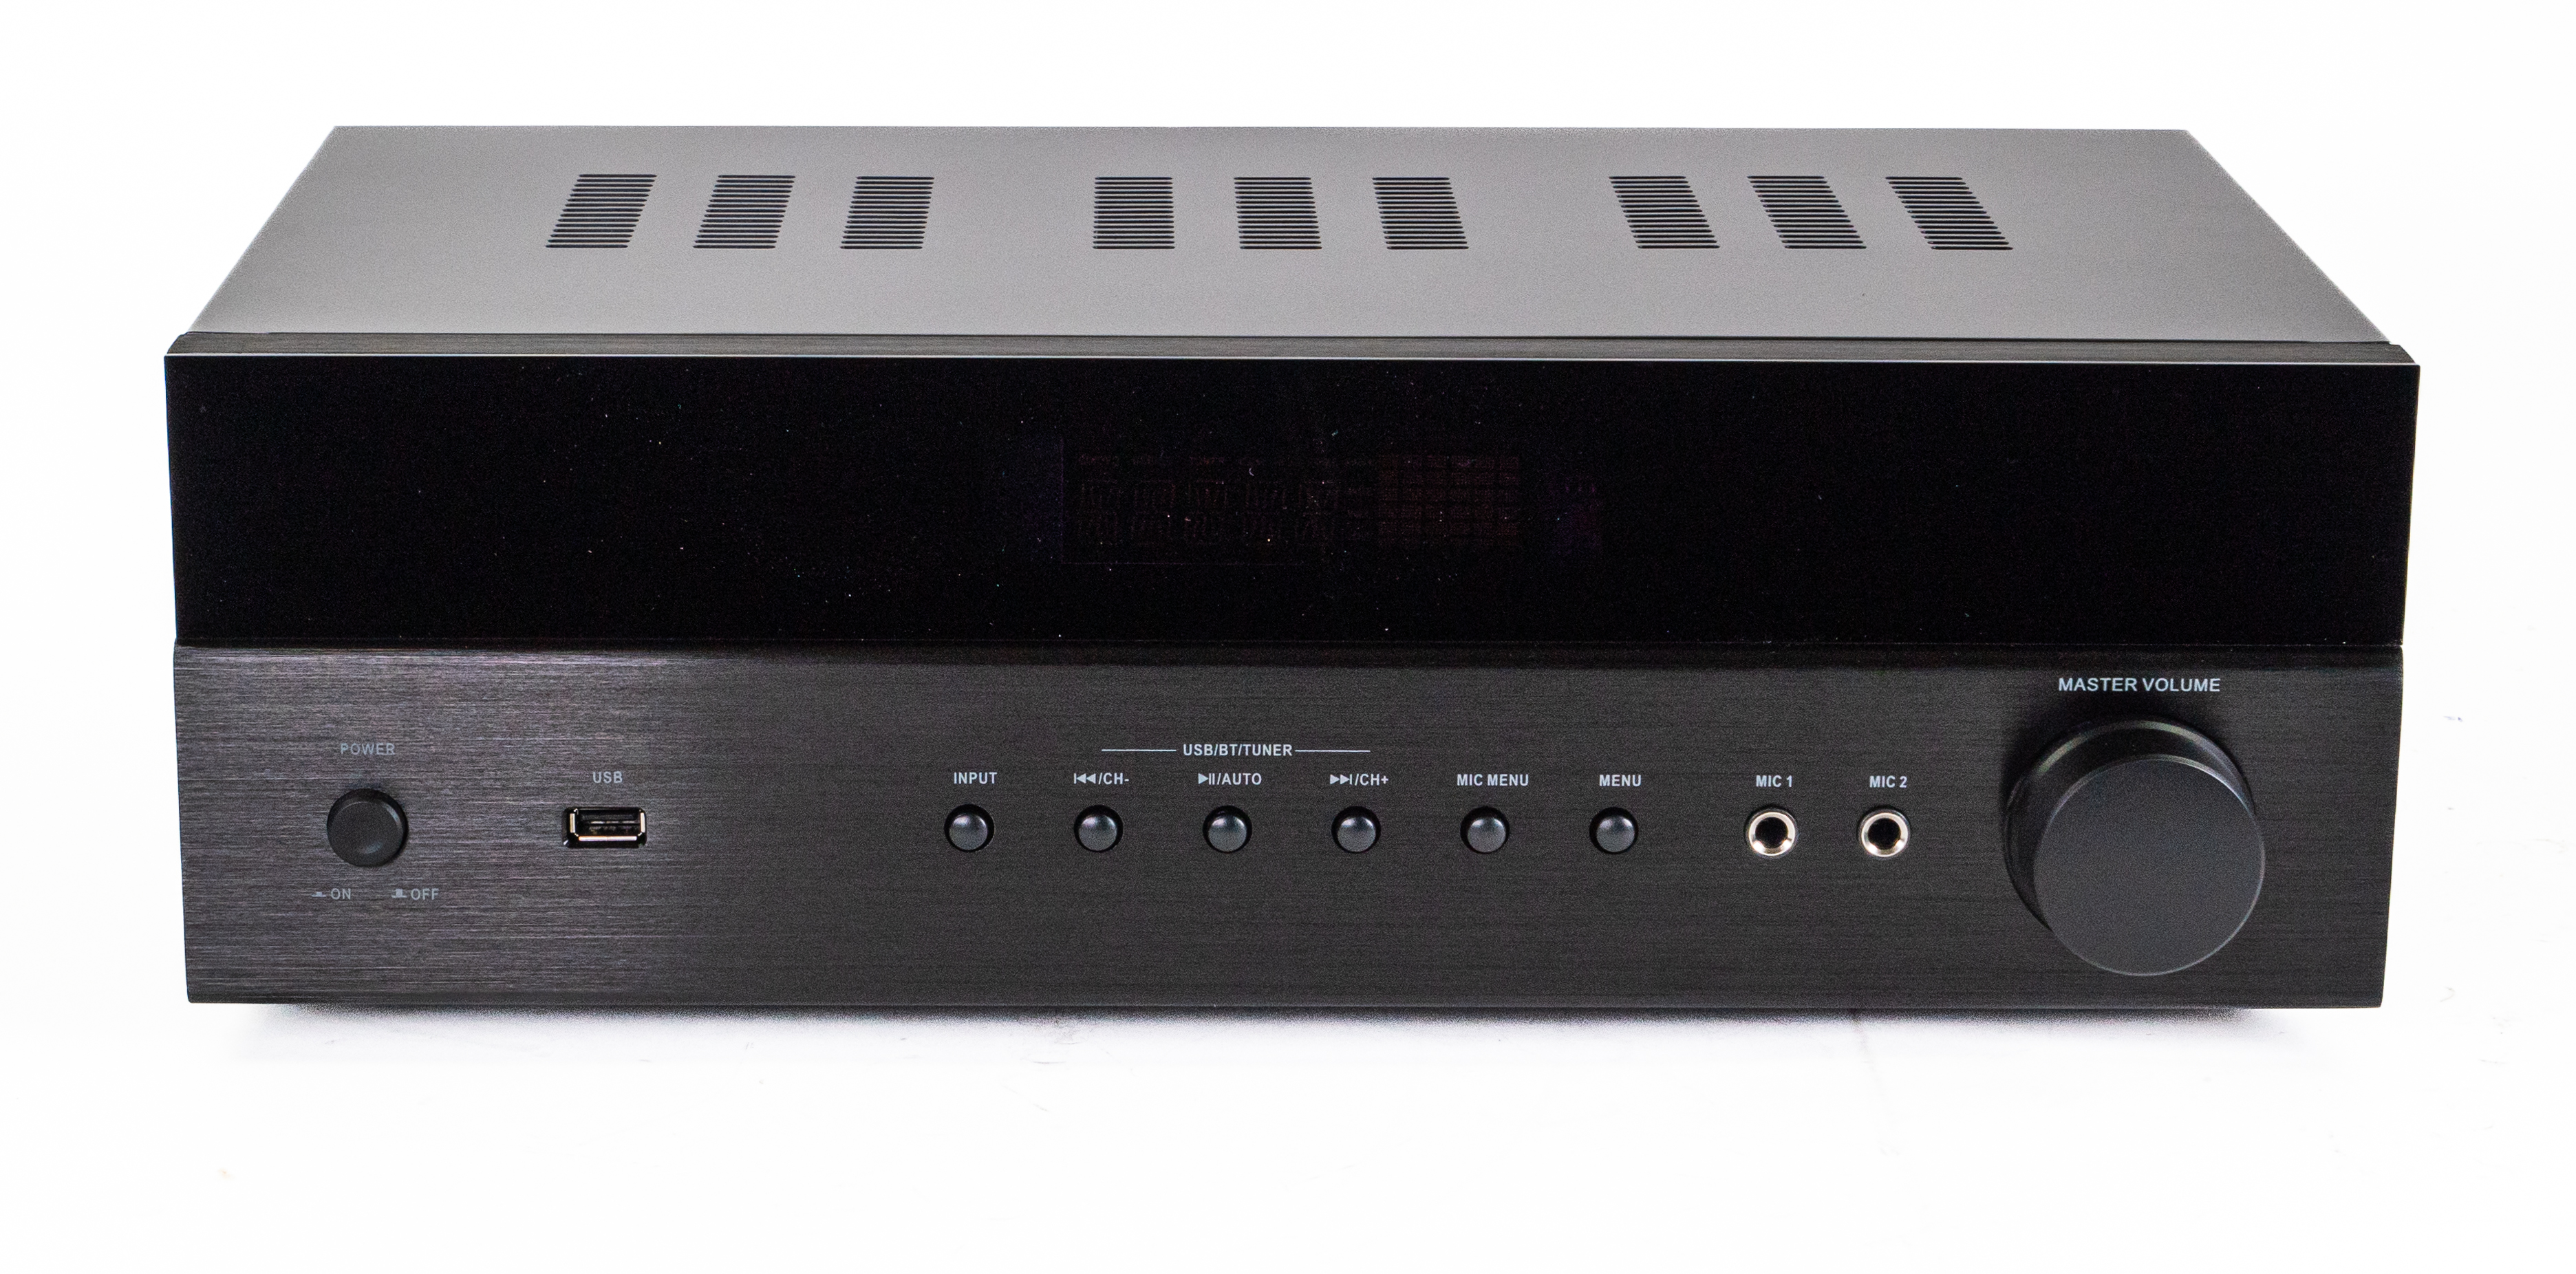 SoundMate AV-A002 5.1 Surround Receiver